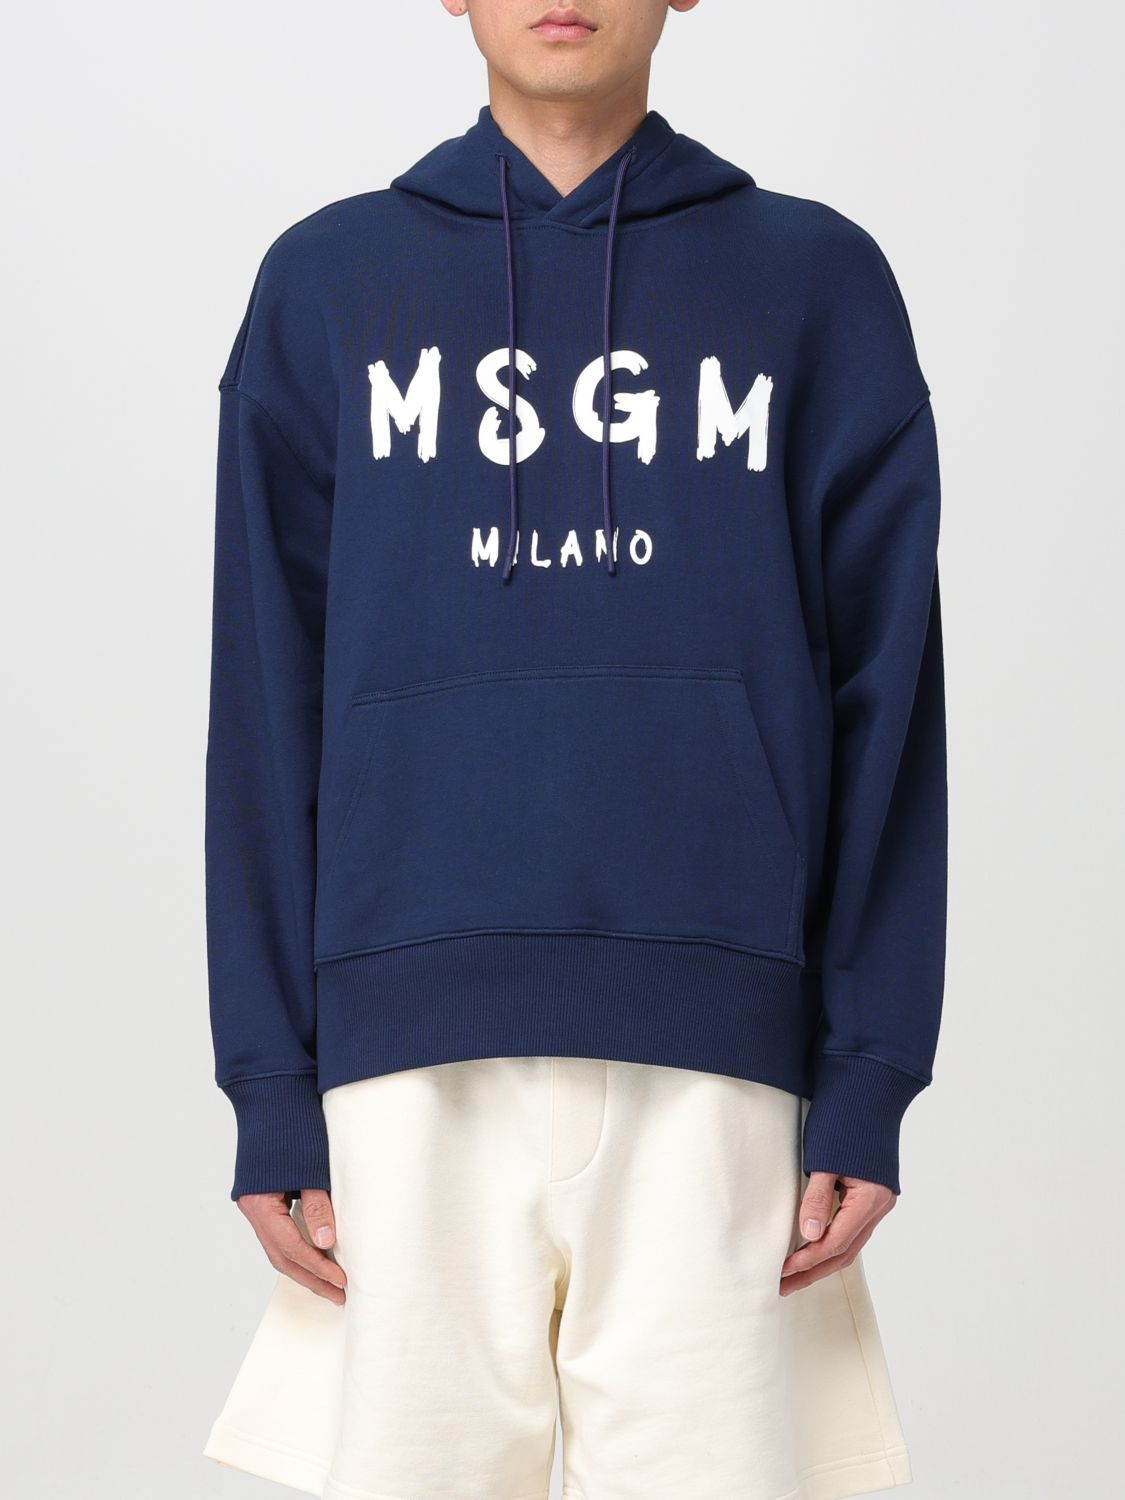 Msgm Sweatshirt MSGM Men colour Navy